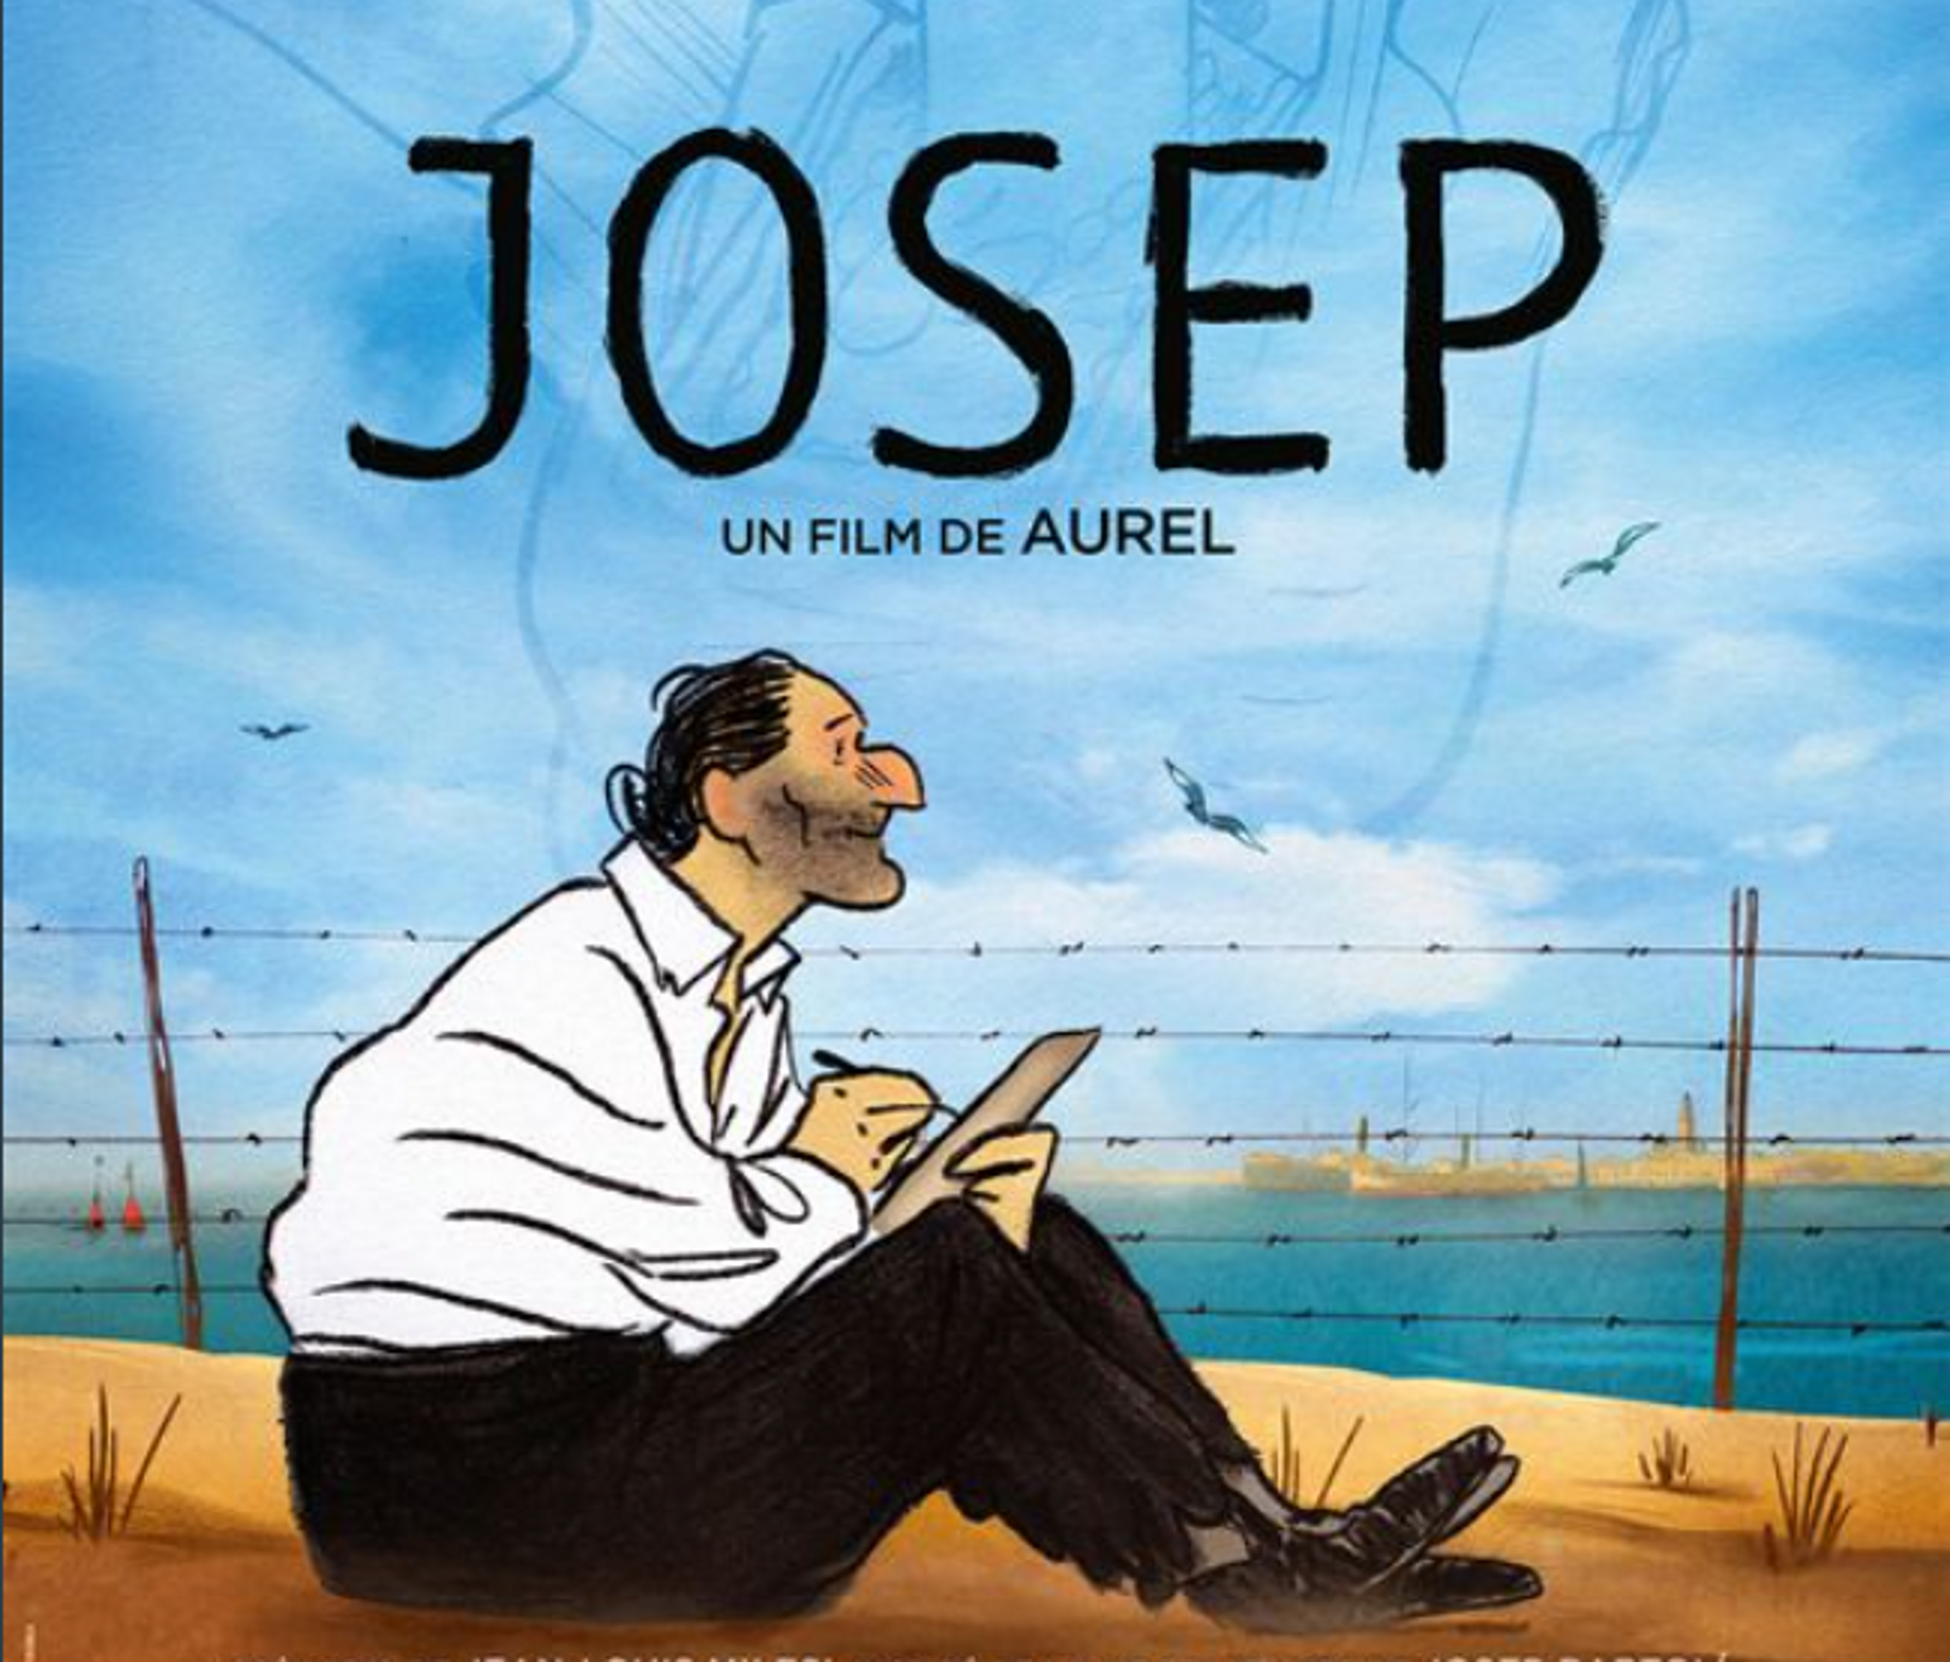 La producción franco-catalana 'Josep' gana el Cèsar al mejor film de animación